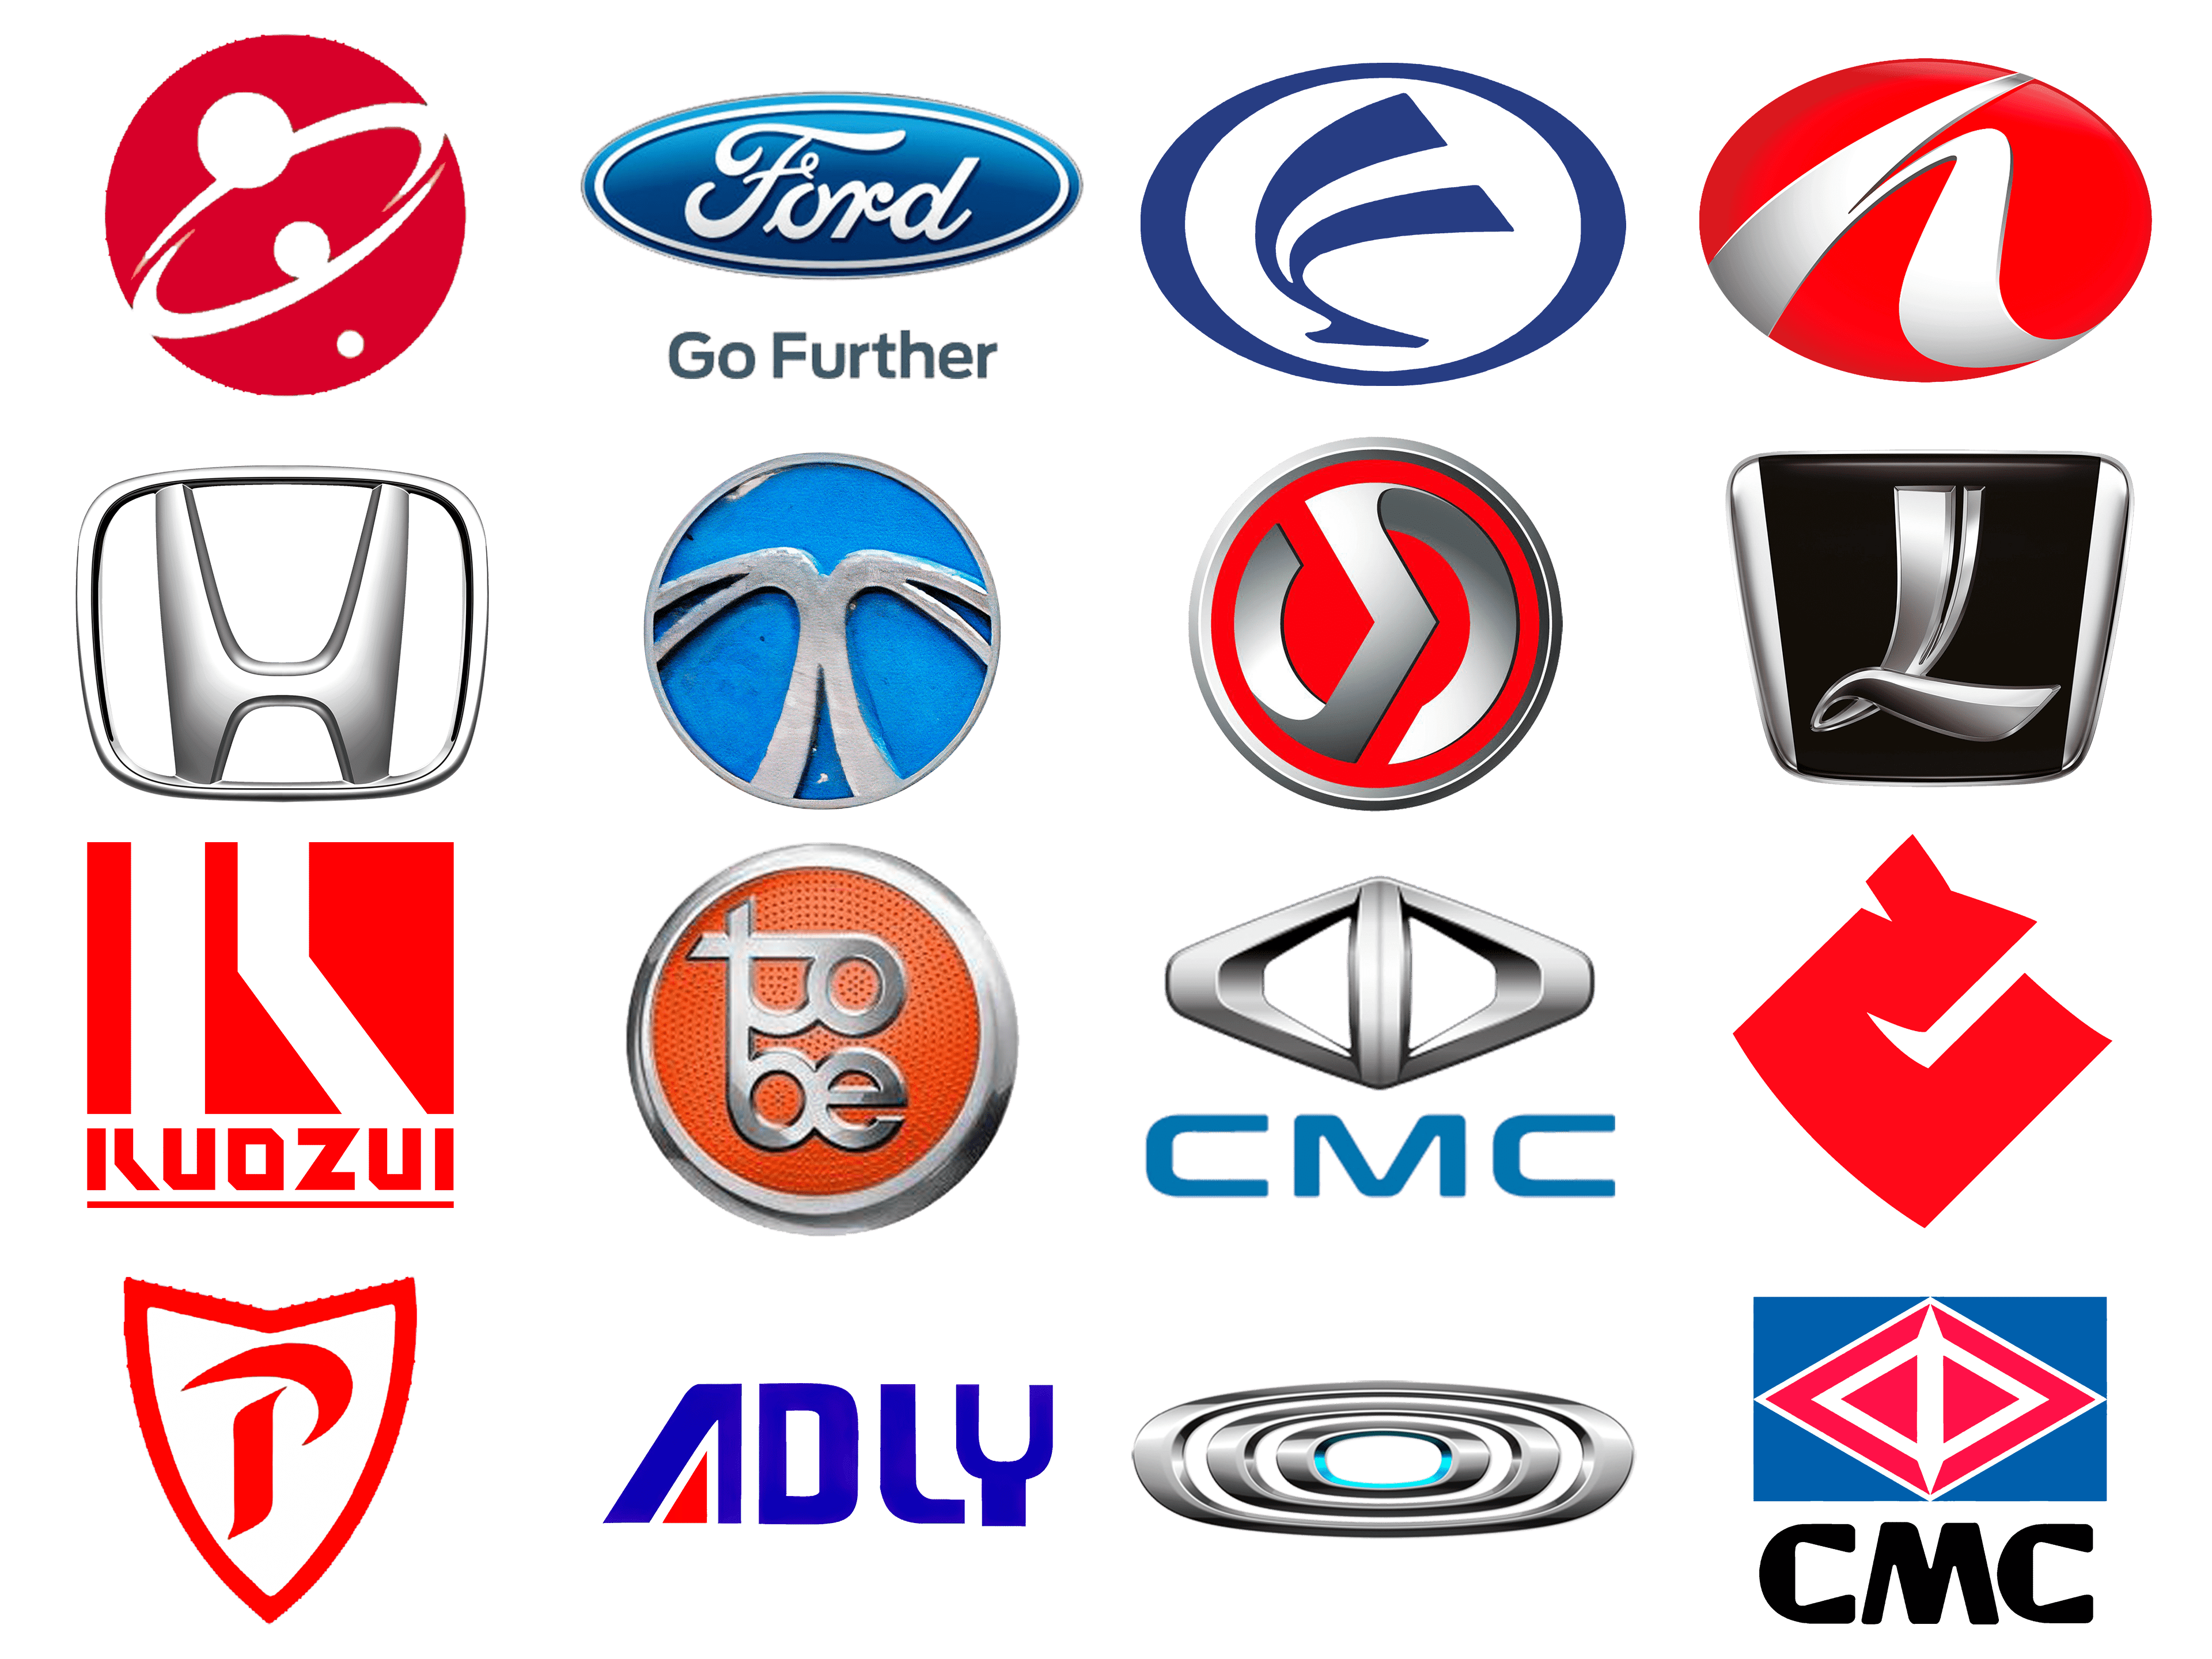 Taiwan car brands – manufacturer car companies, logos